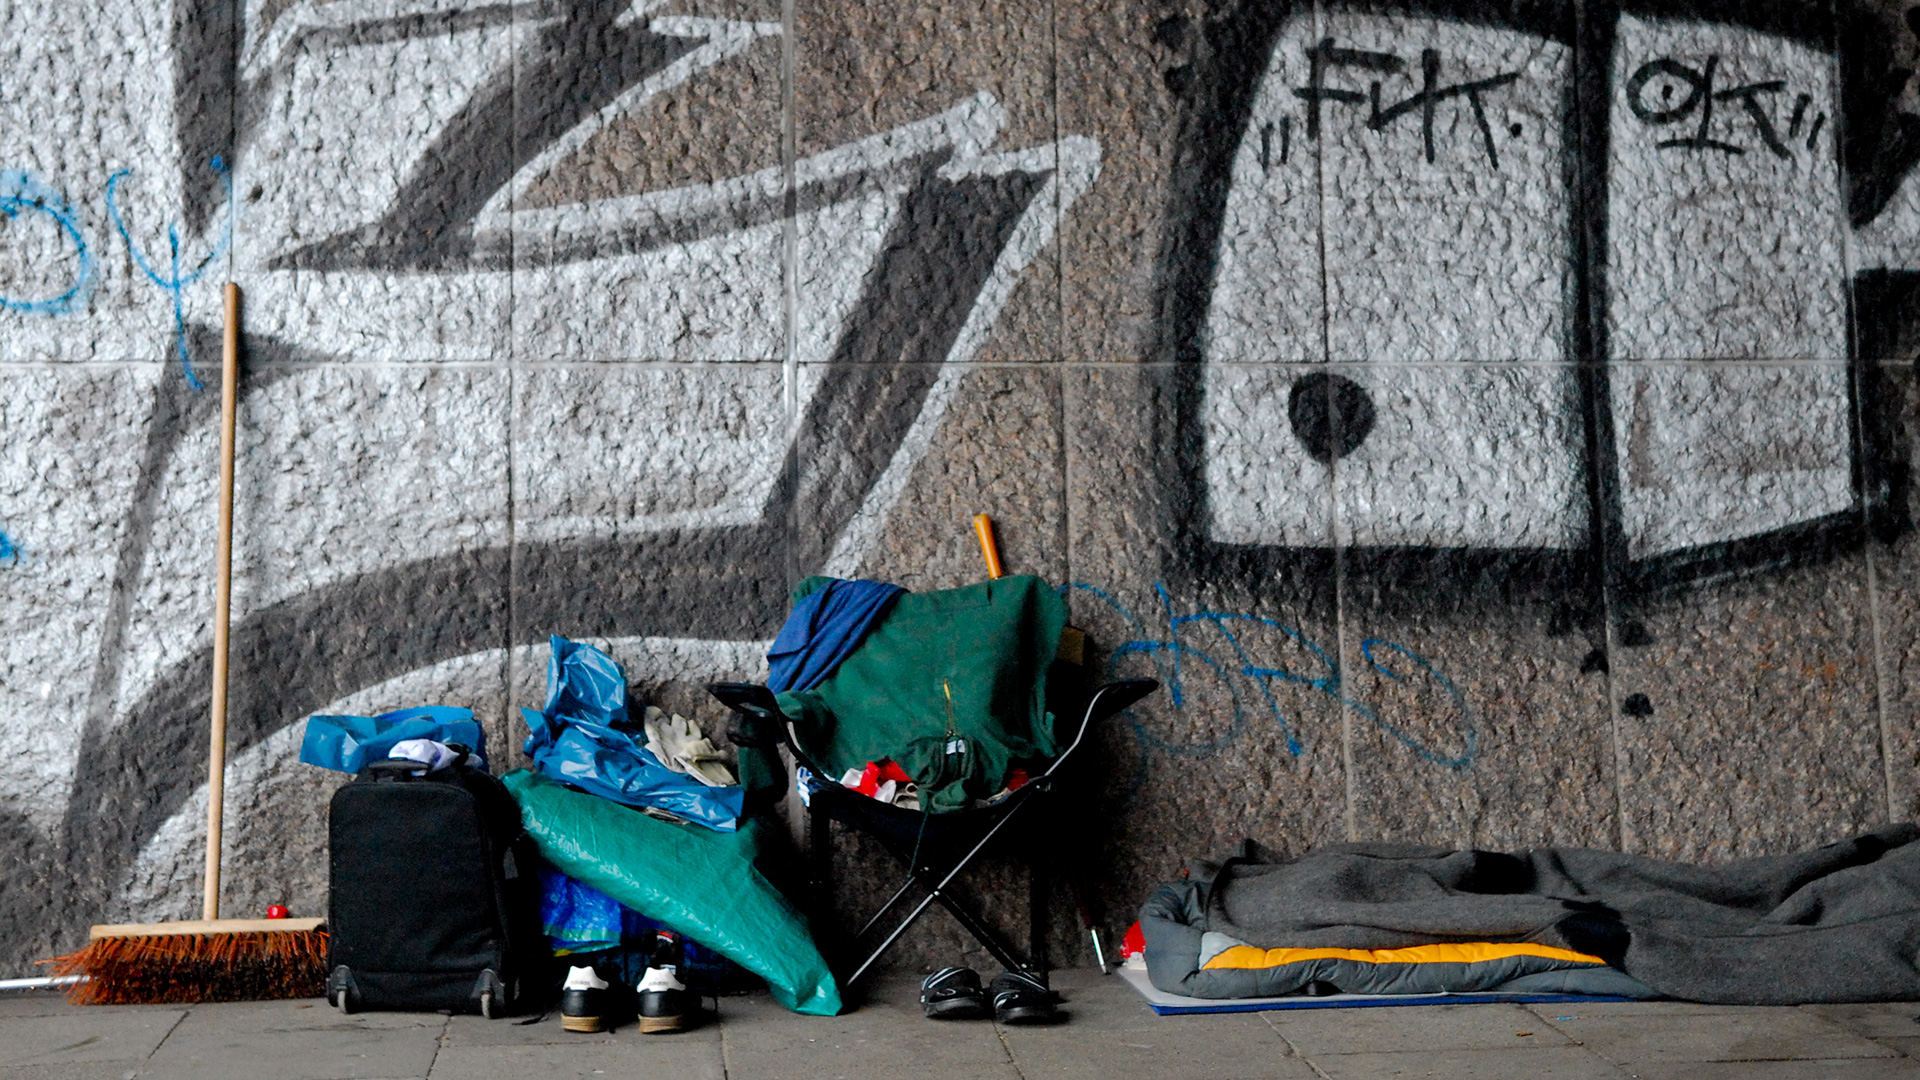 Aufgeräumte, saubere Schlafstätte eines Obdachlosen mit Besen, Stuhl, Schuhen, Schlafsack vor einer Mauer mit Graffiti